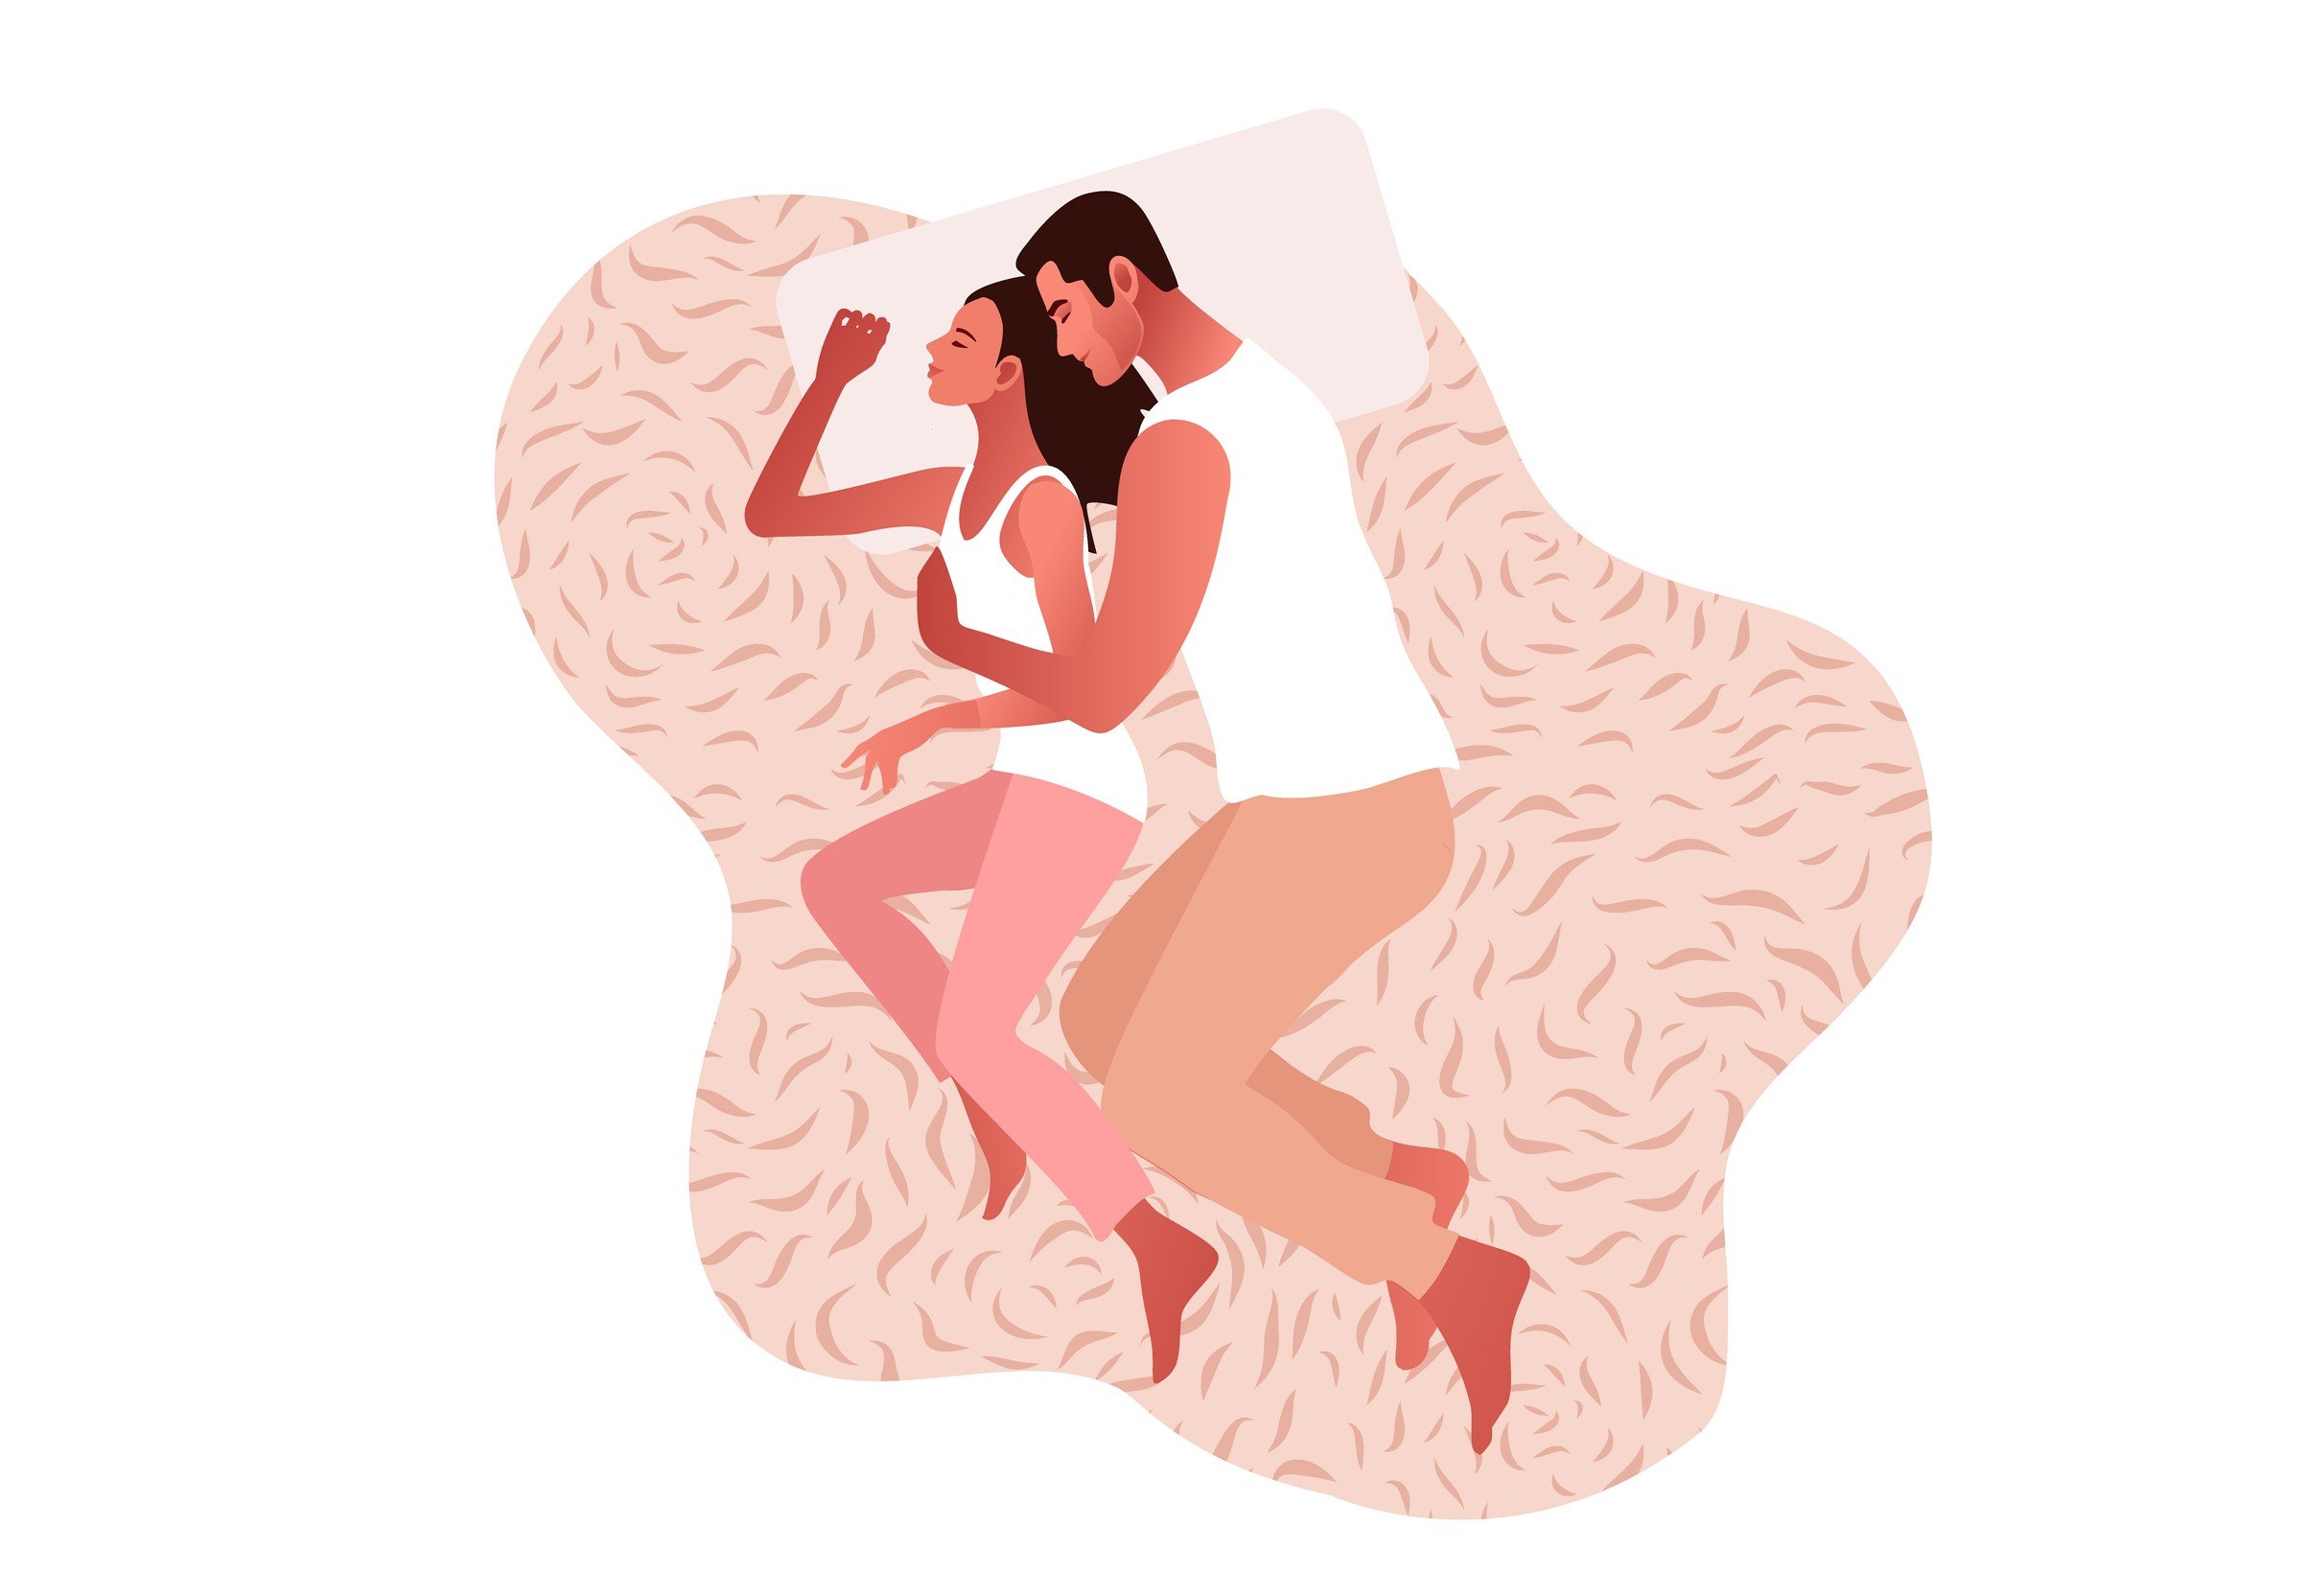 schön romantisch paar schlafen intim sexuell